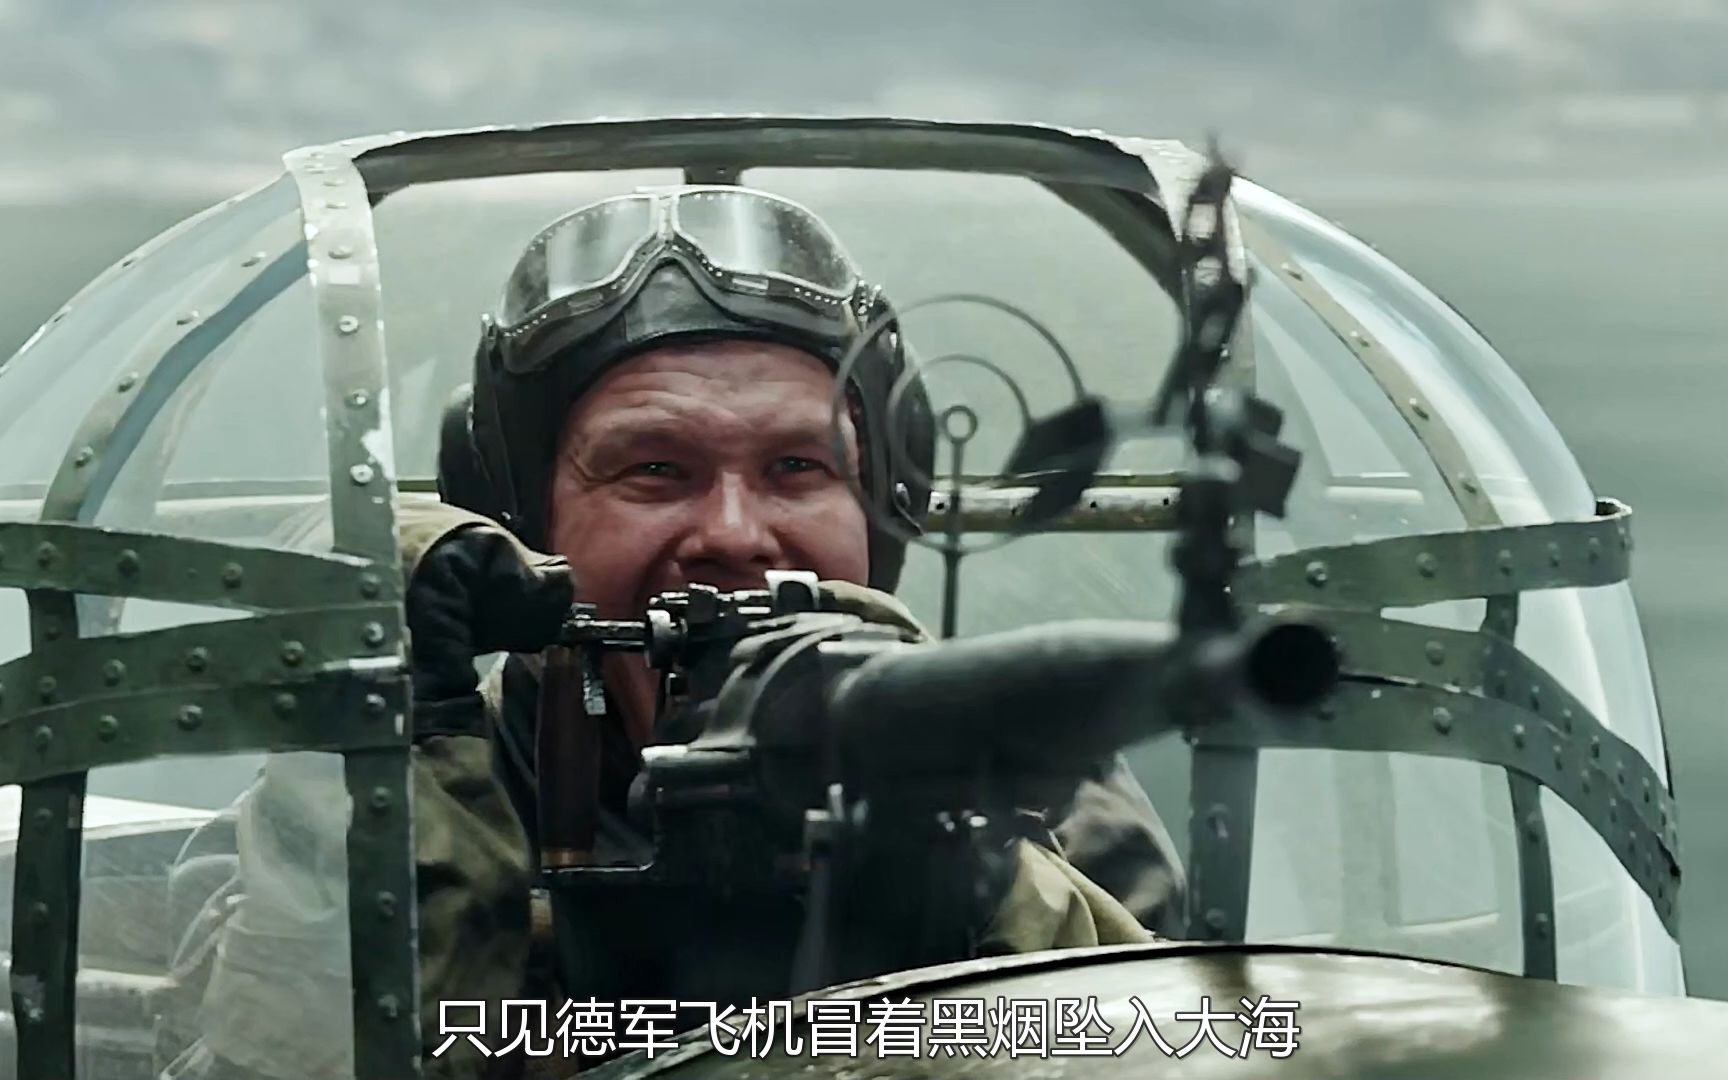 空战电影《激战航空队》:苏联轰炸机突袭德军战舰,场面激烈